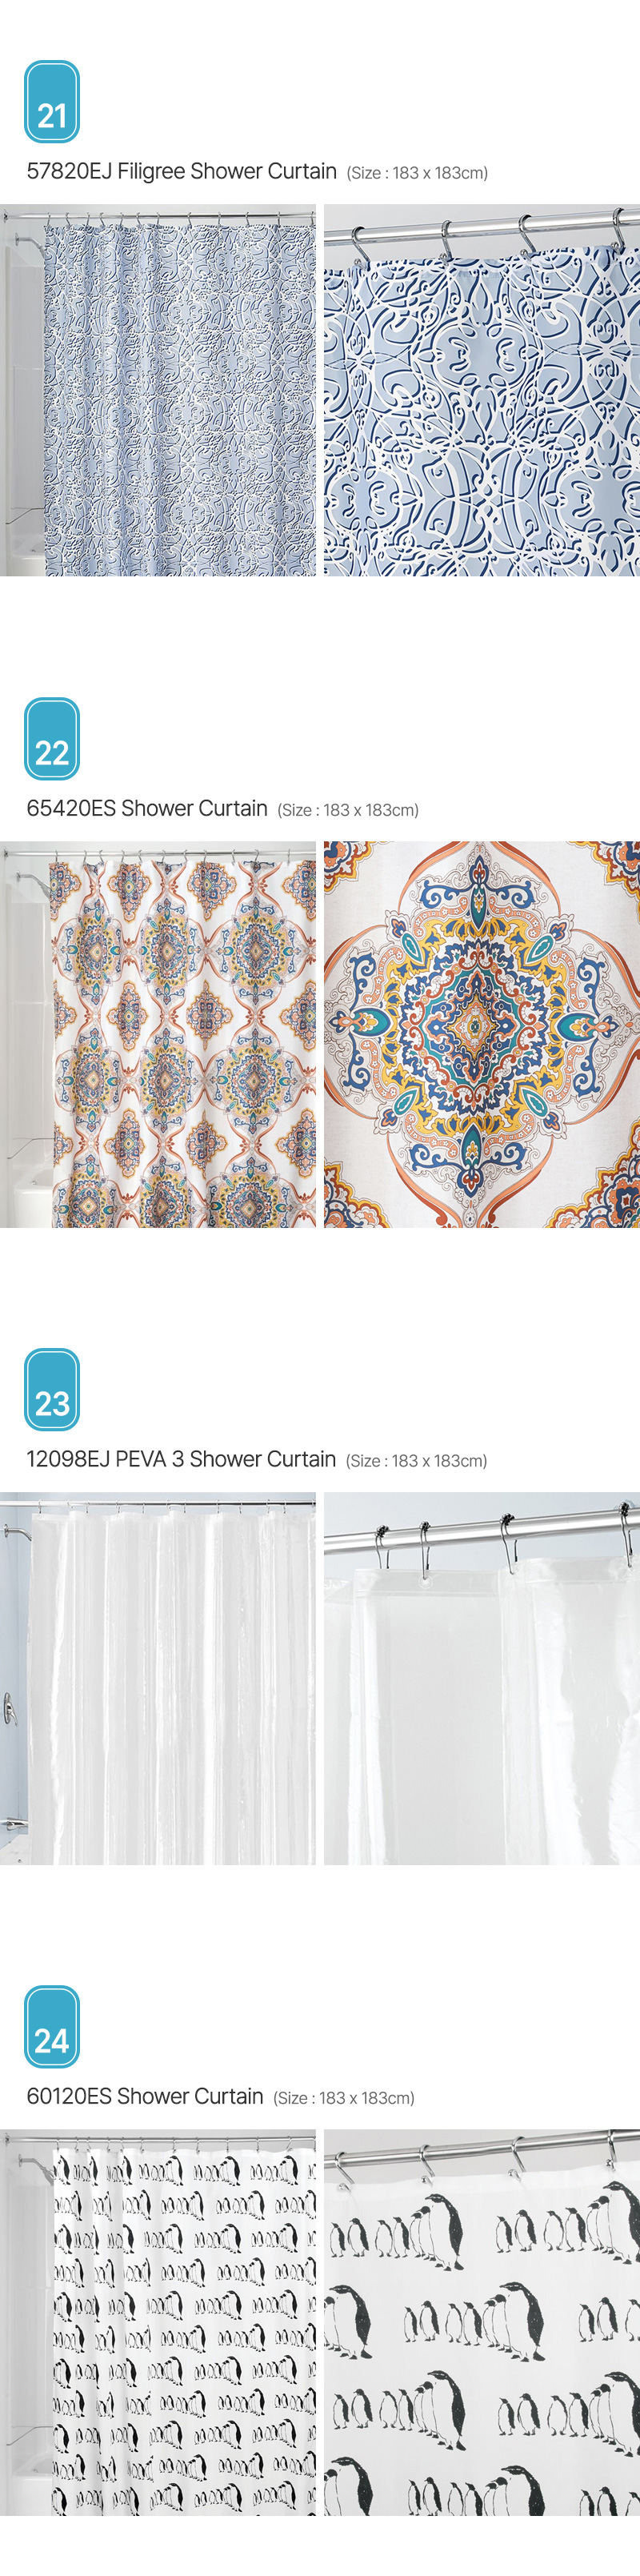 Aria_Shower-Curtain_06.jpg